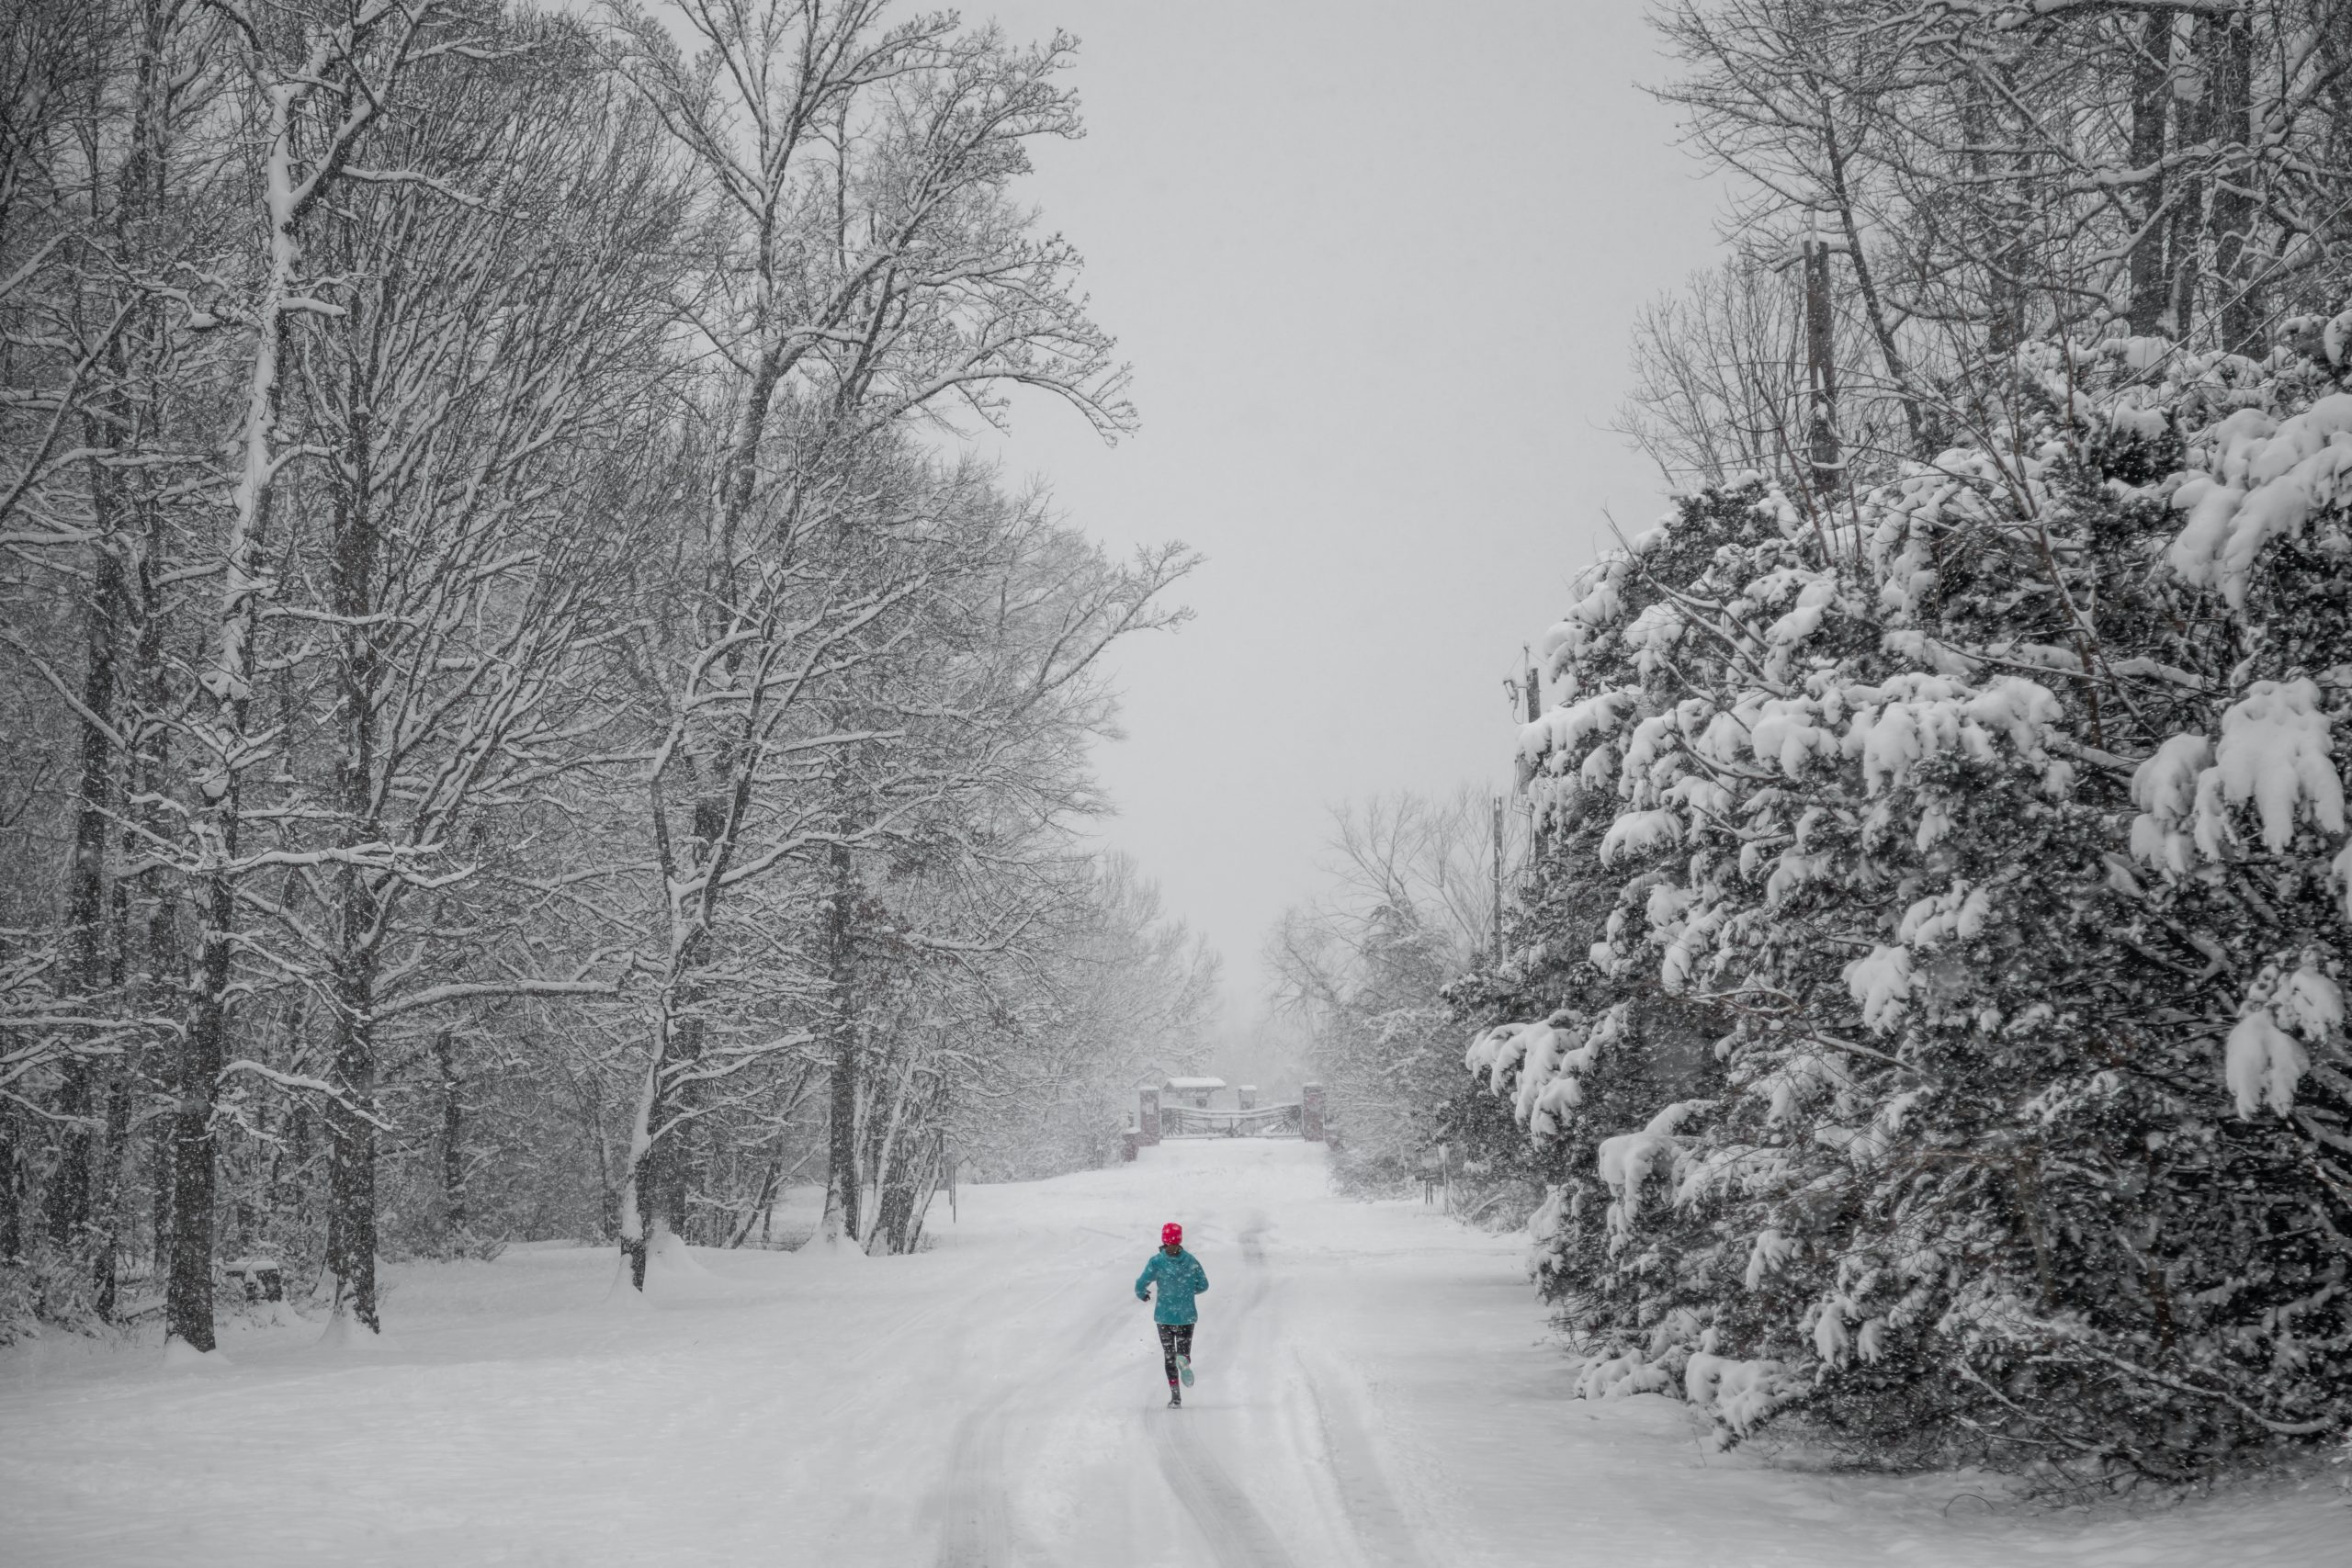 Laufen im Winter: Erfahren Sie, warum Winterläufe spezielle Risiken bergen und wie Sie sich optimal darauf vorbereiten.